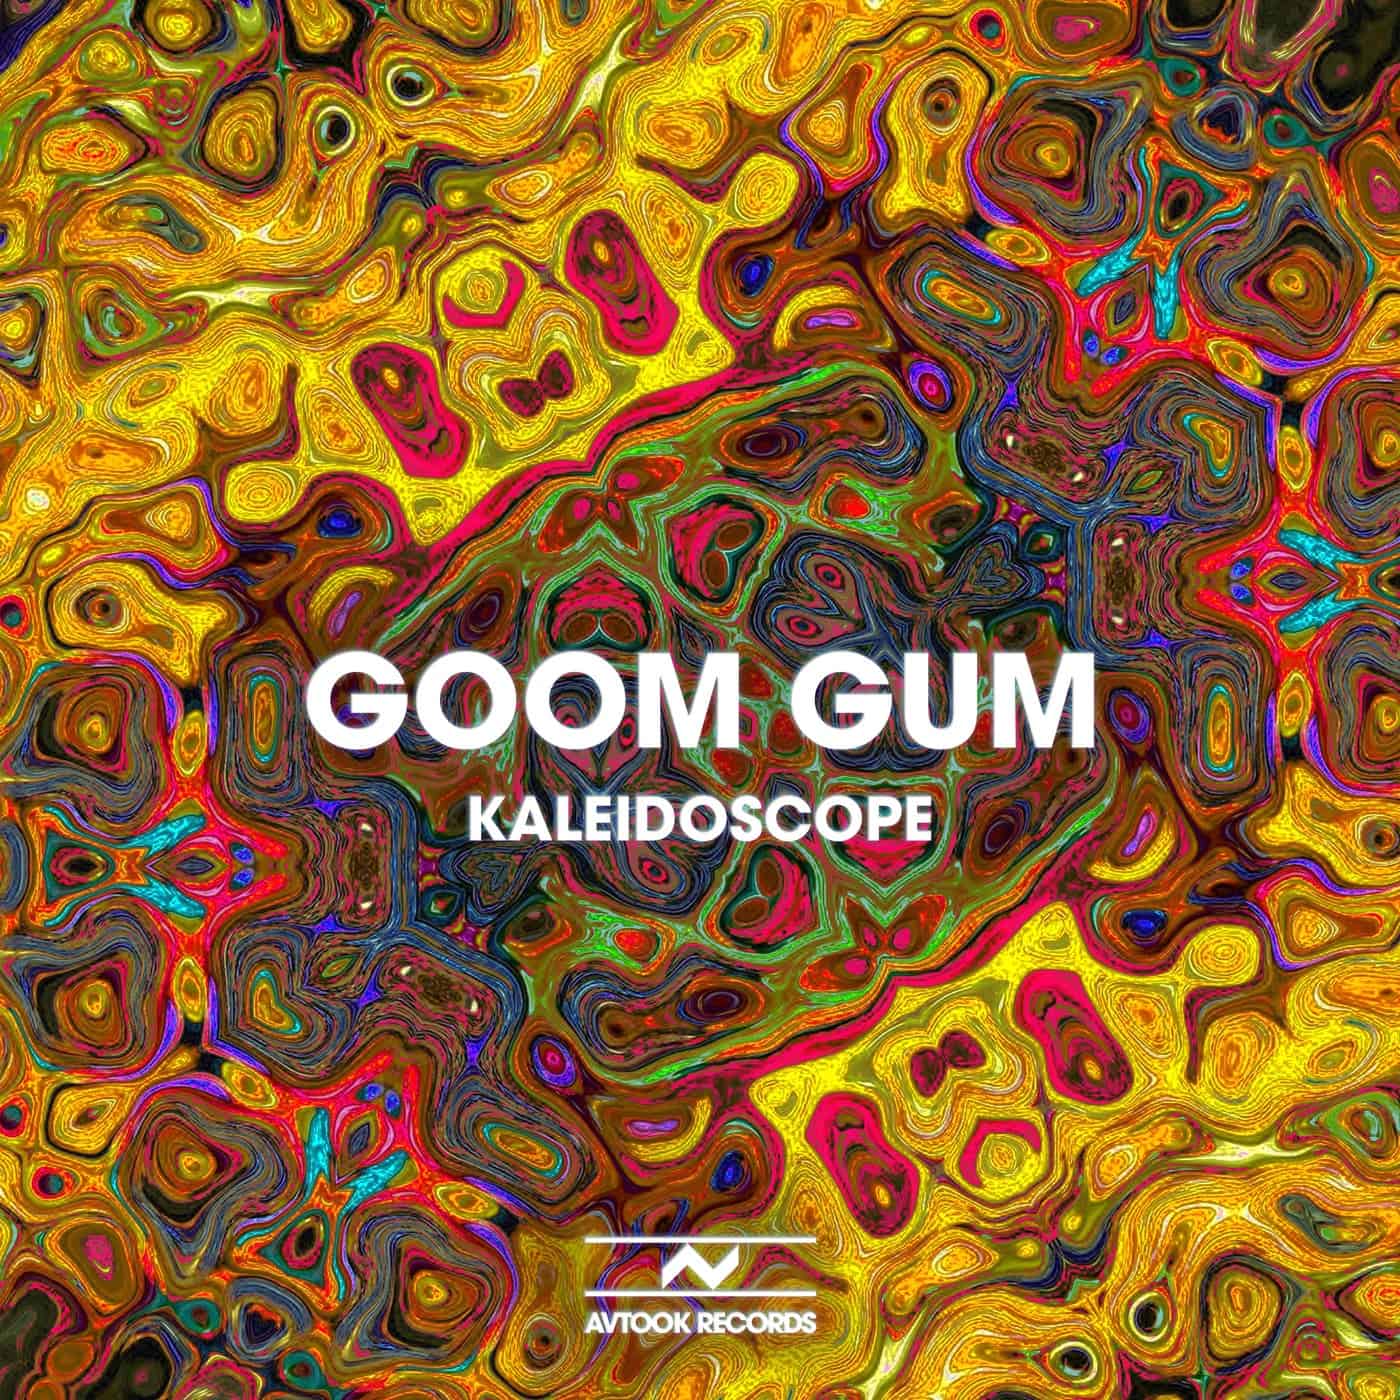 image cover: Goom Gum - Kaleidoscope / AVT08